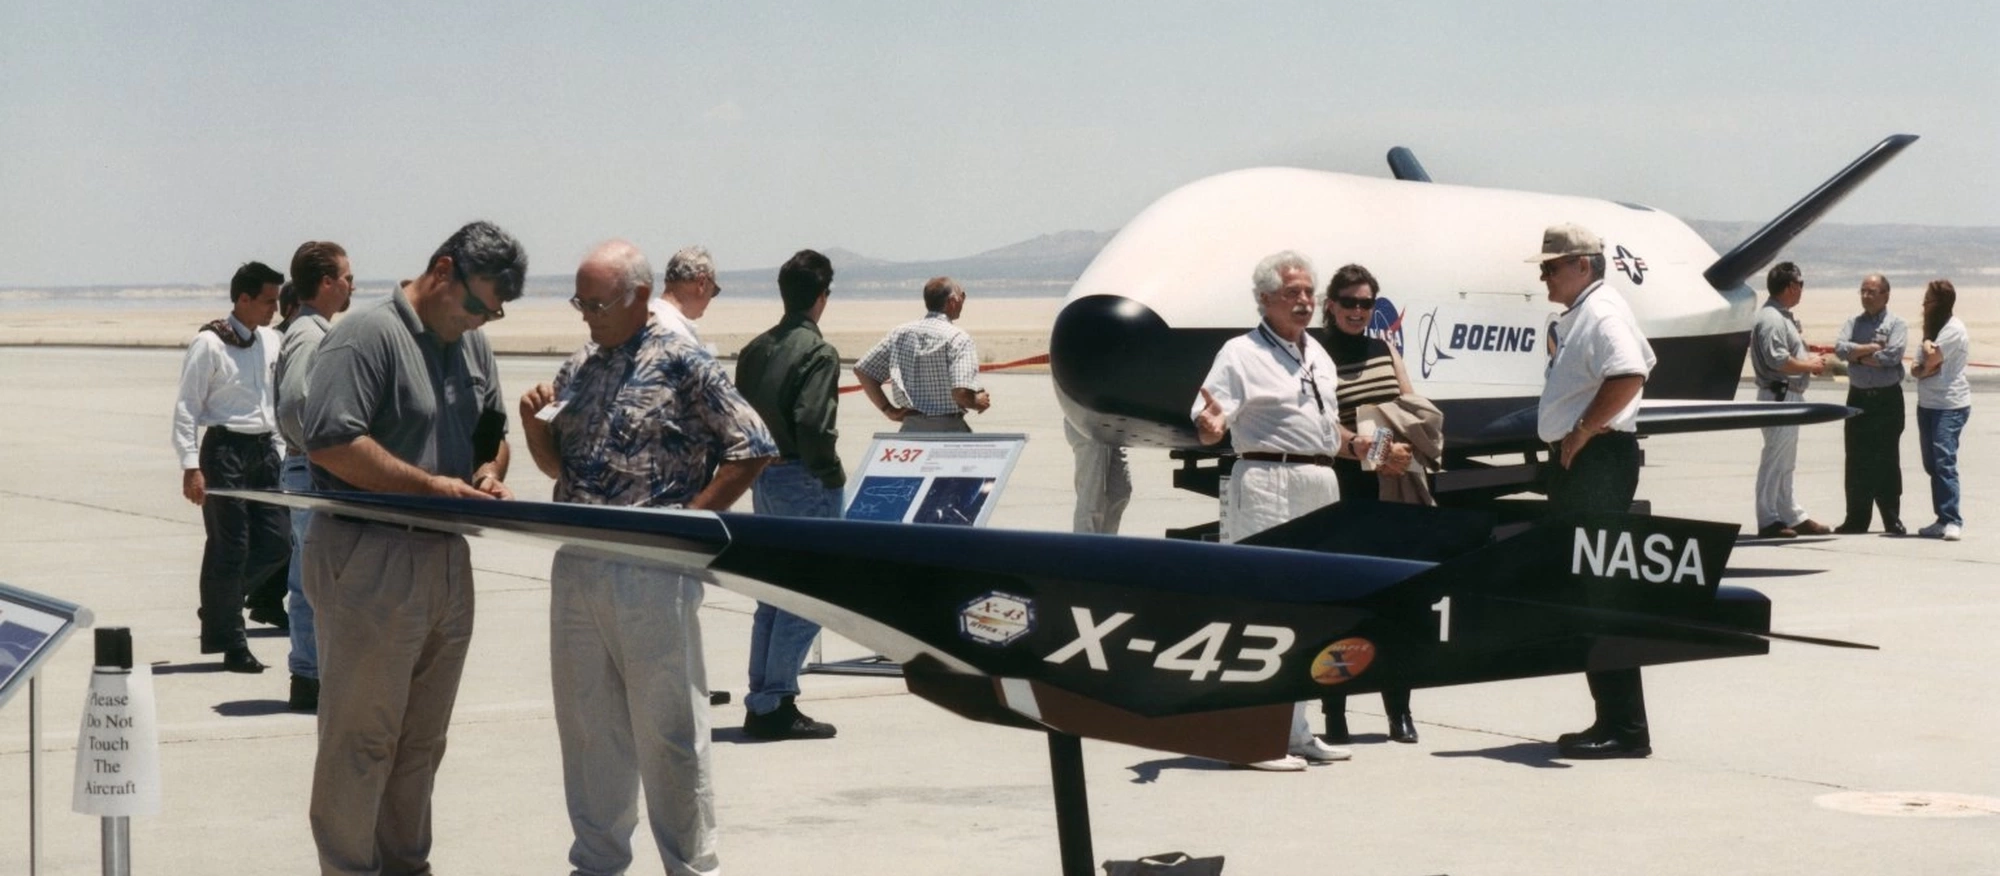 Експериментальний Boeing X-43 з гіперзвуковим ППРД, досягнута швидкість 9,68 Маха у 2004 році